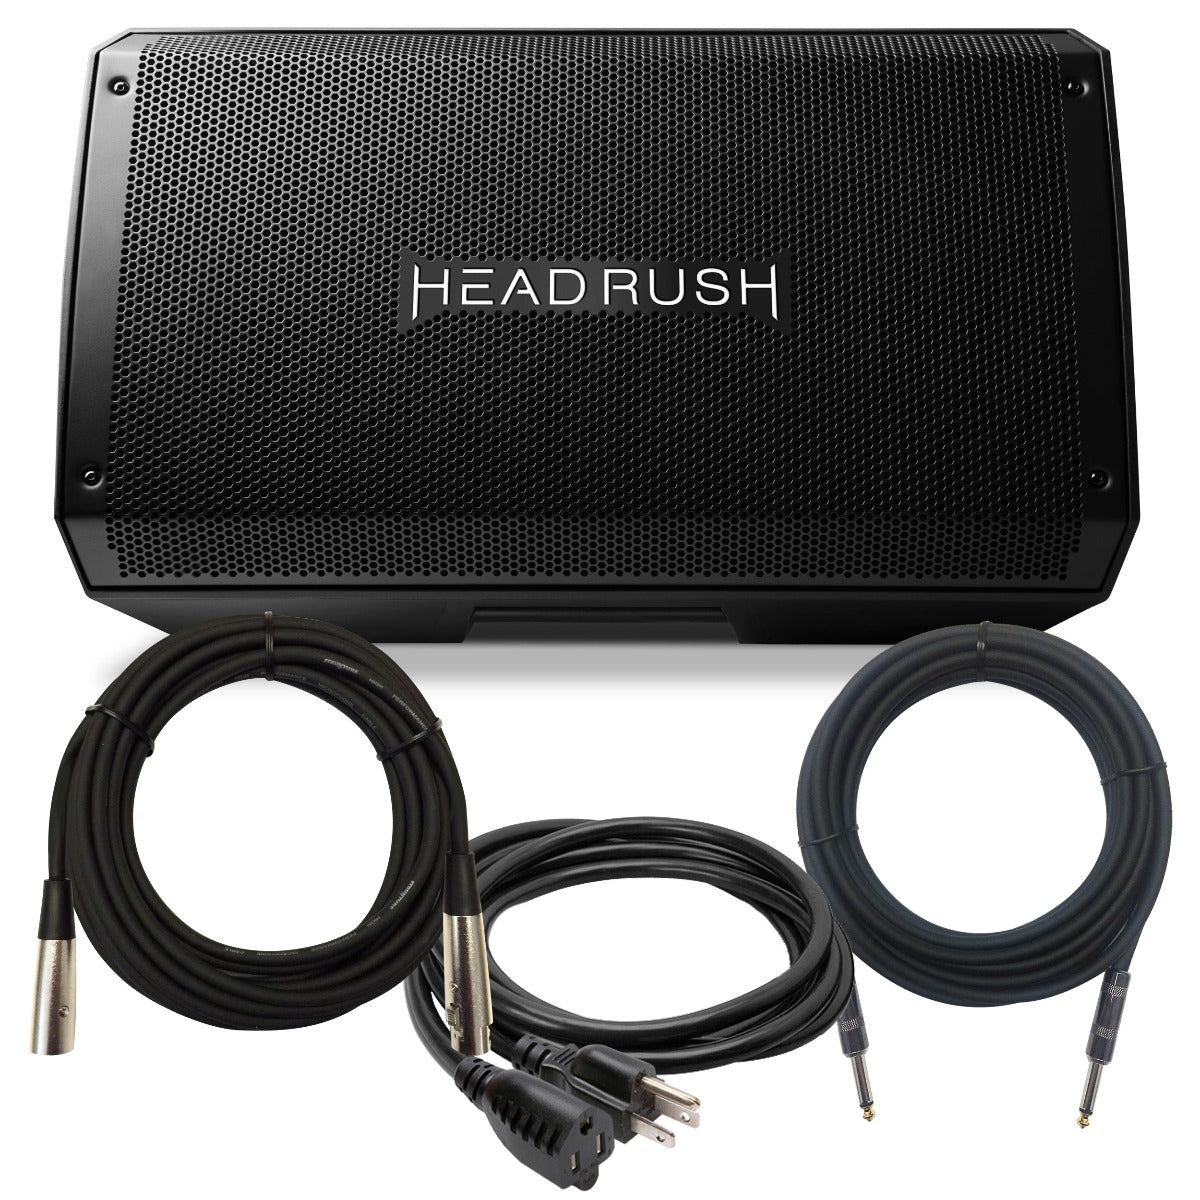 Headrush FRFR-112 Powered Speaker CABLE KIT